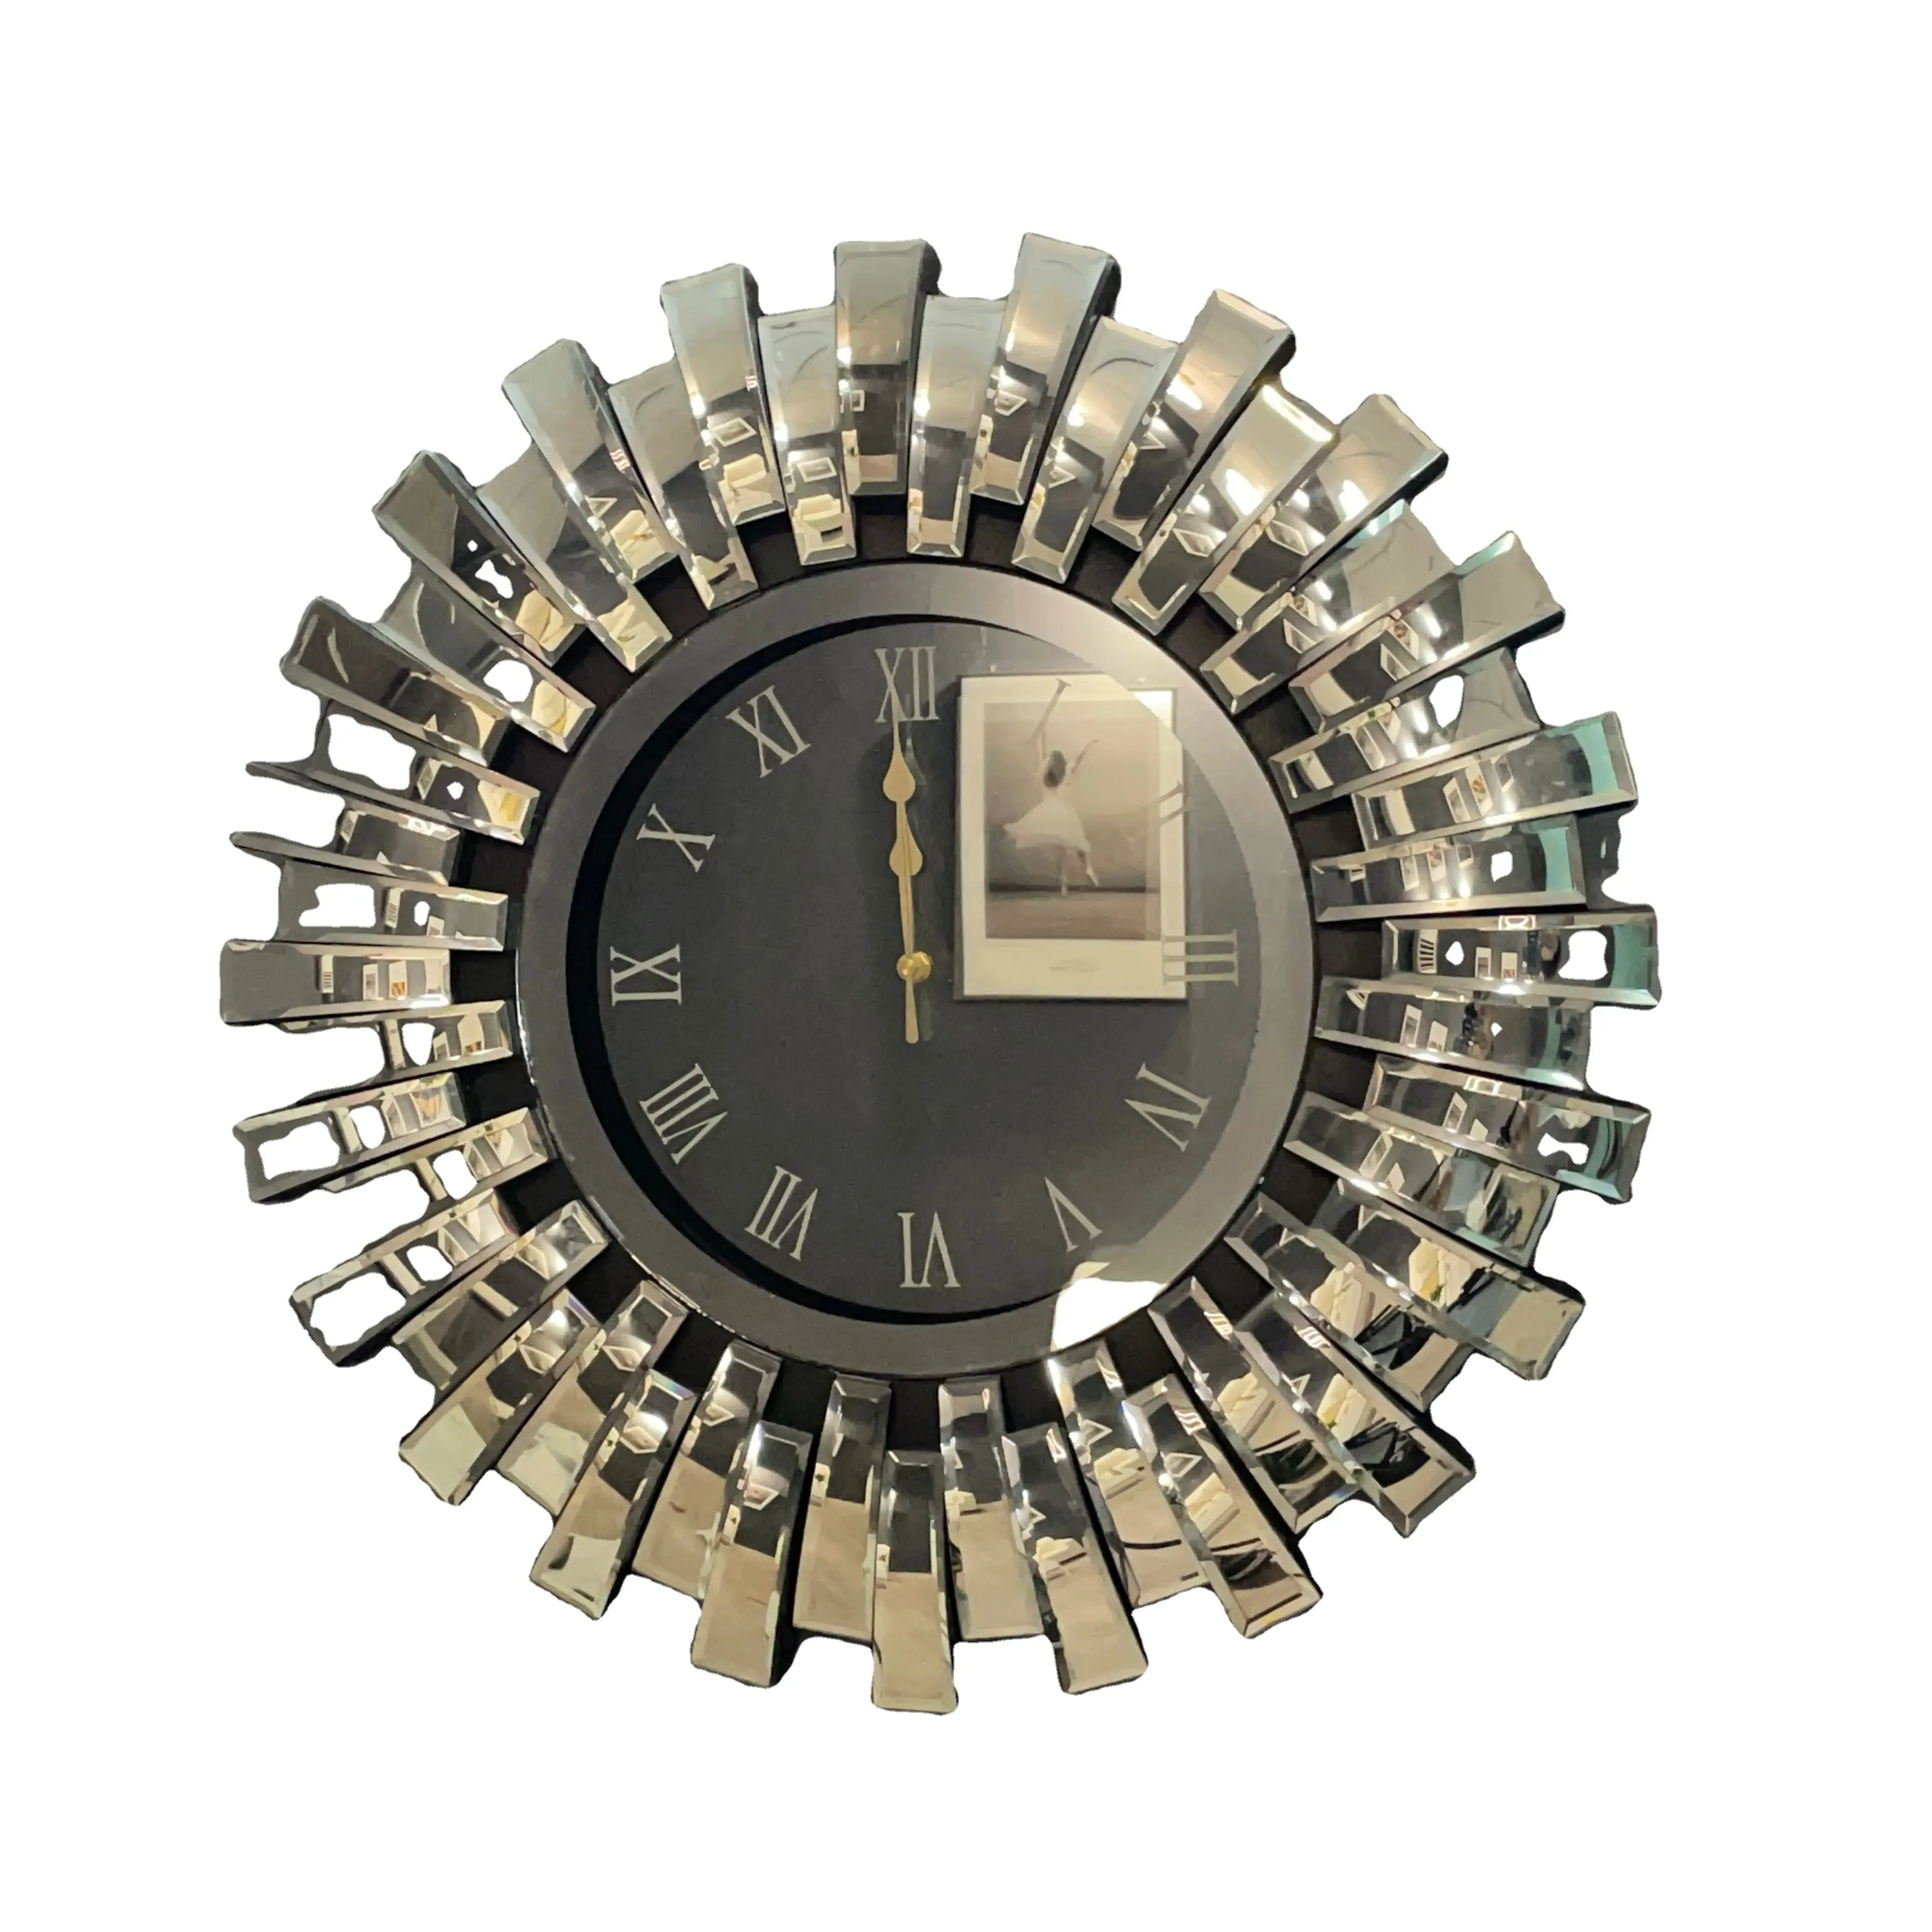 2022 Muebles Meubles Hoge Kwaliteit Groothandel 3D Mirrored Wandklok Gespiegeld Horloge Muur Art Decor Staande Klok Moebles Meble